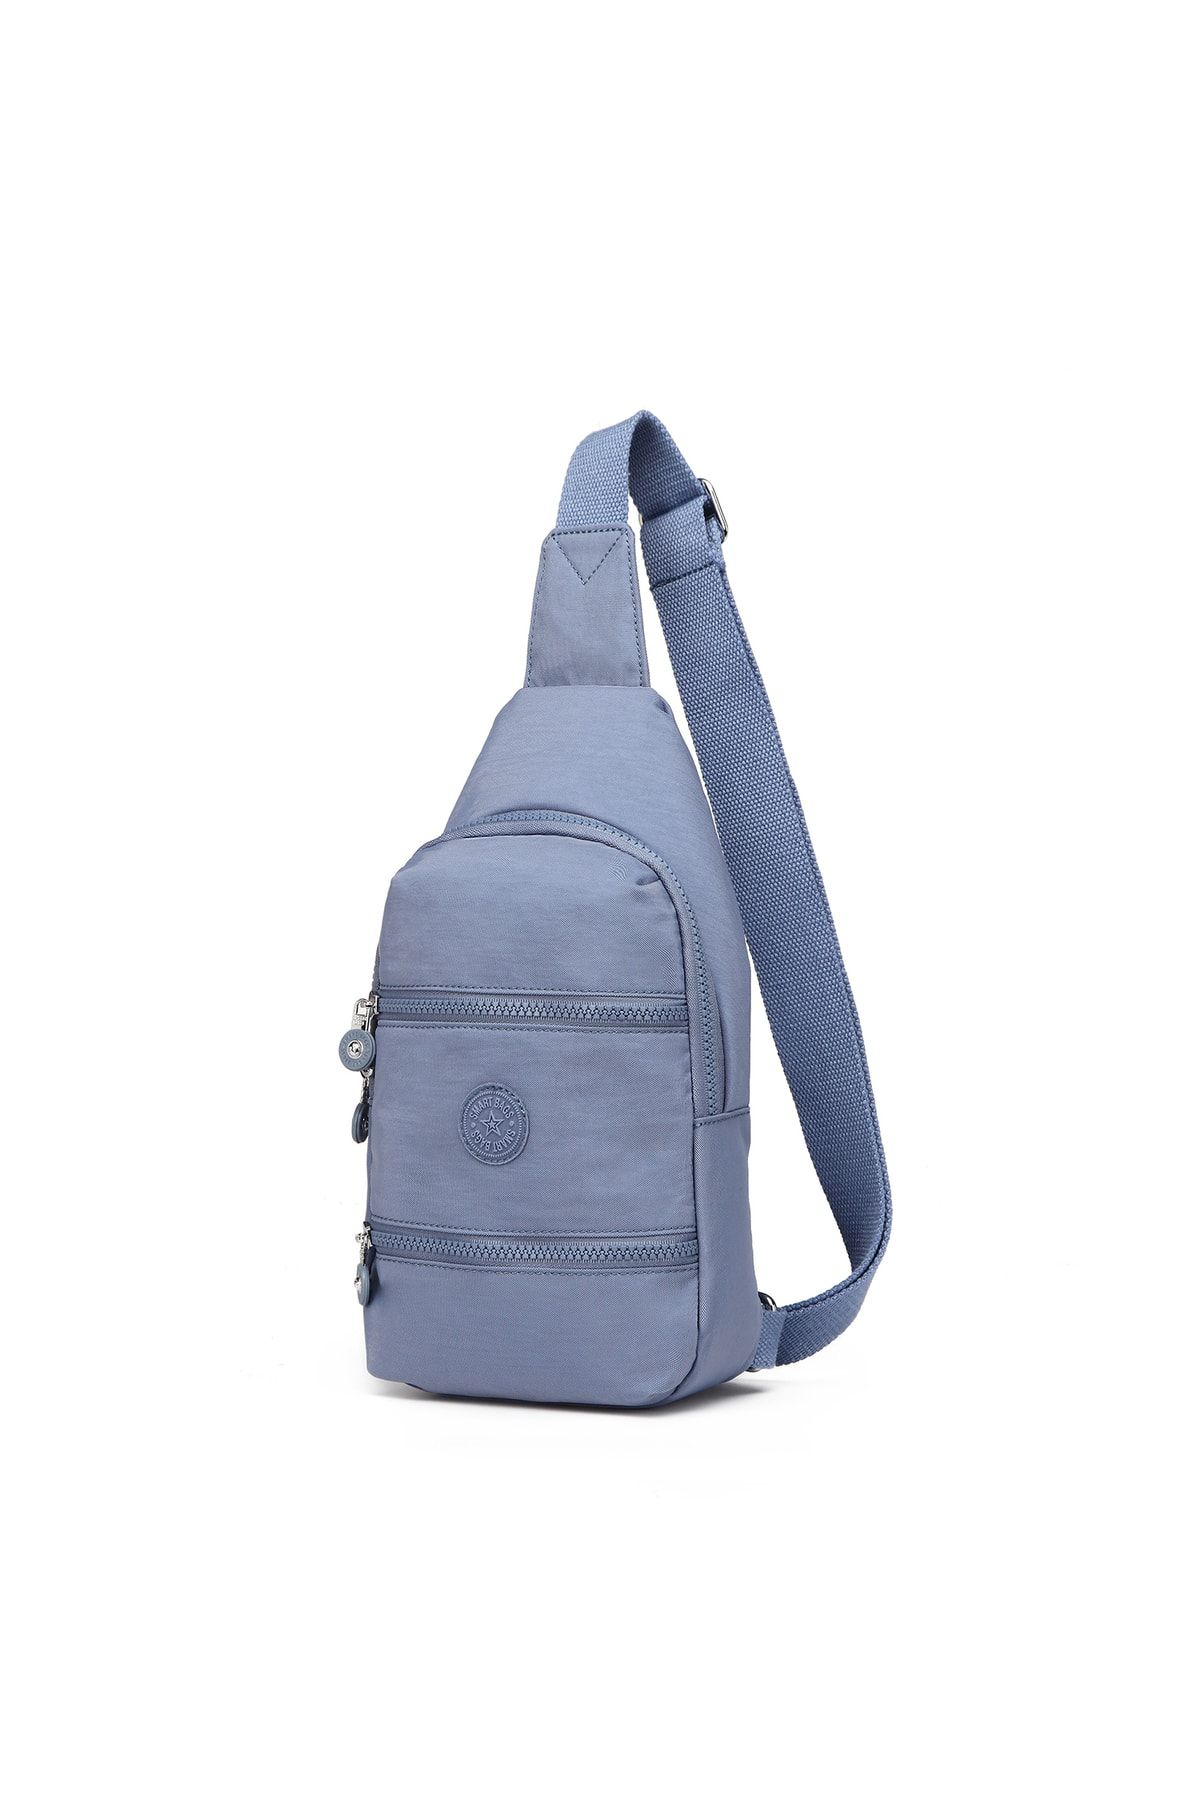 Smart Bags Bodybag Postacı Kadın Çantası Krinkıl Kumaş 3051 J.mavi